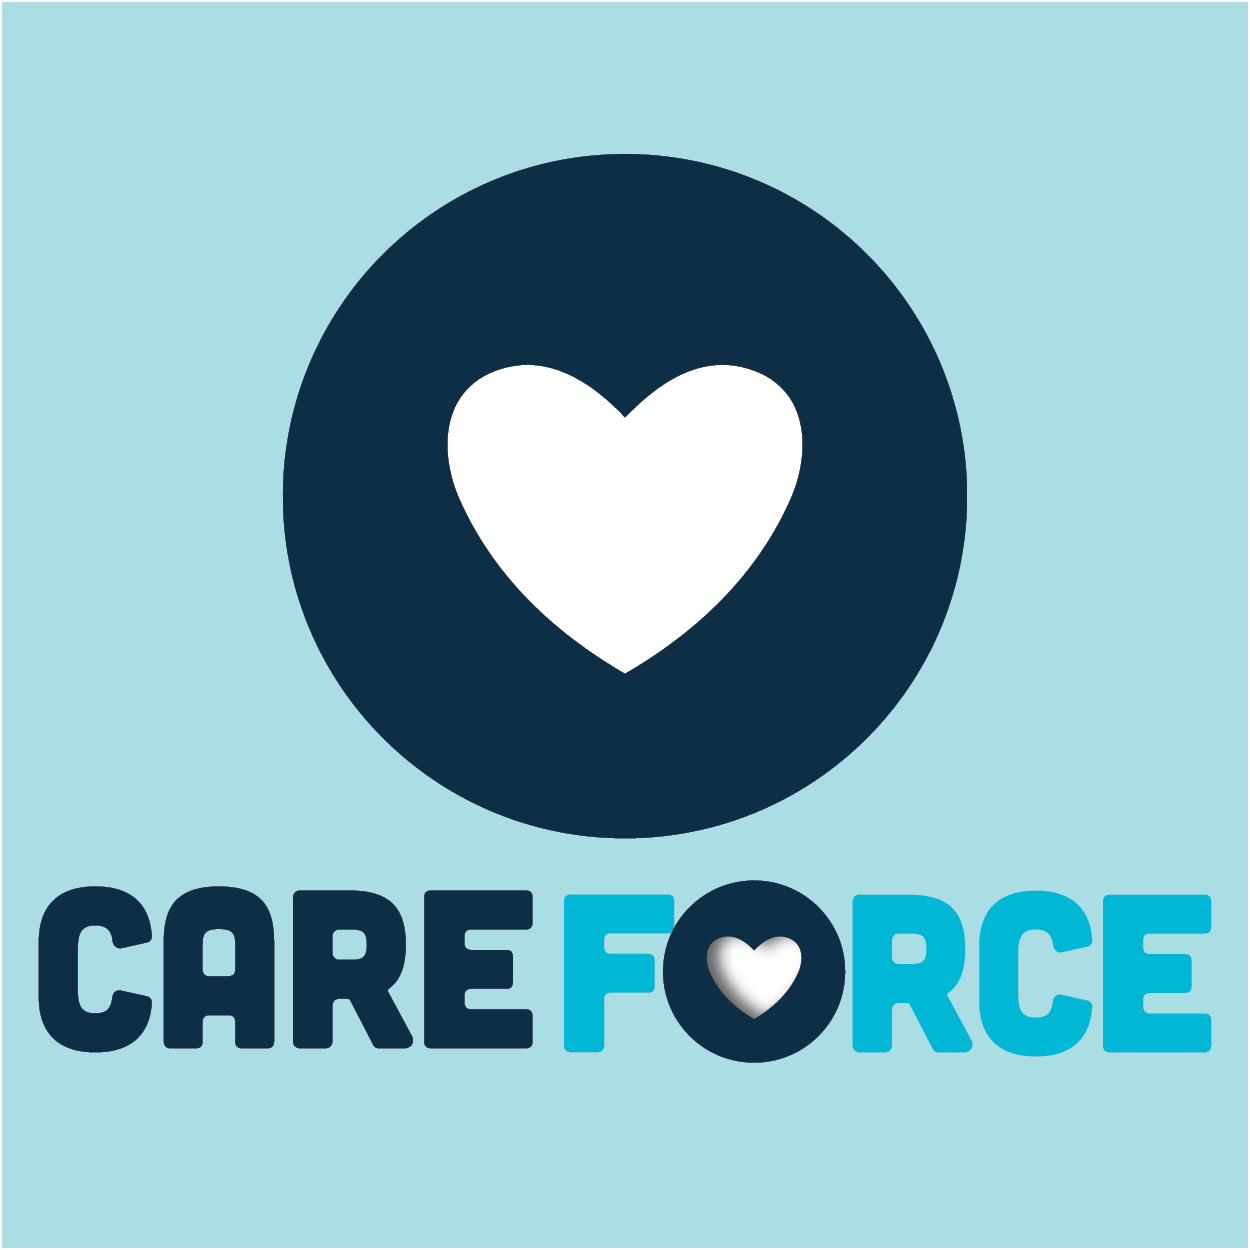 CareForce Job Seeker Online Information Session